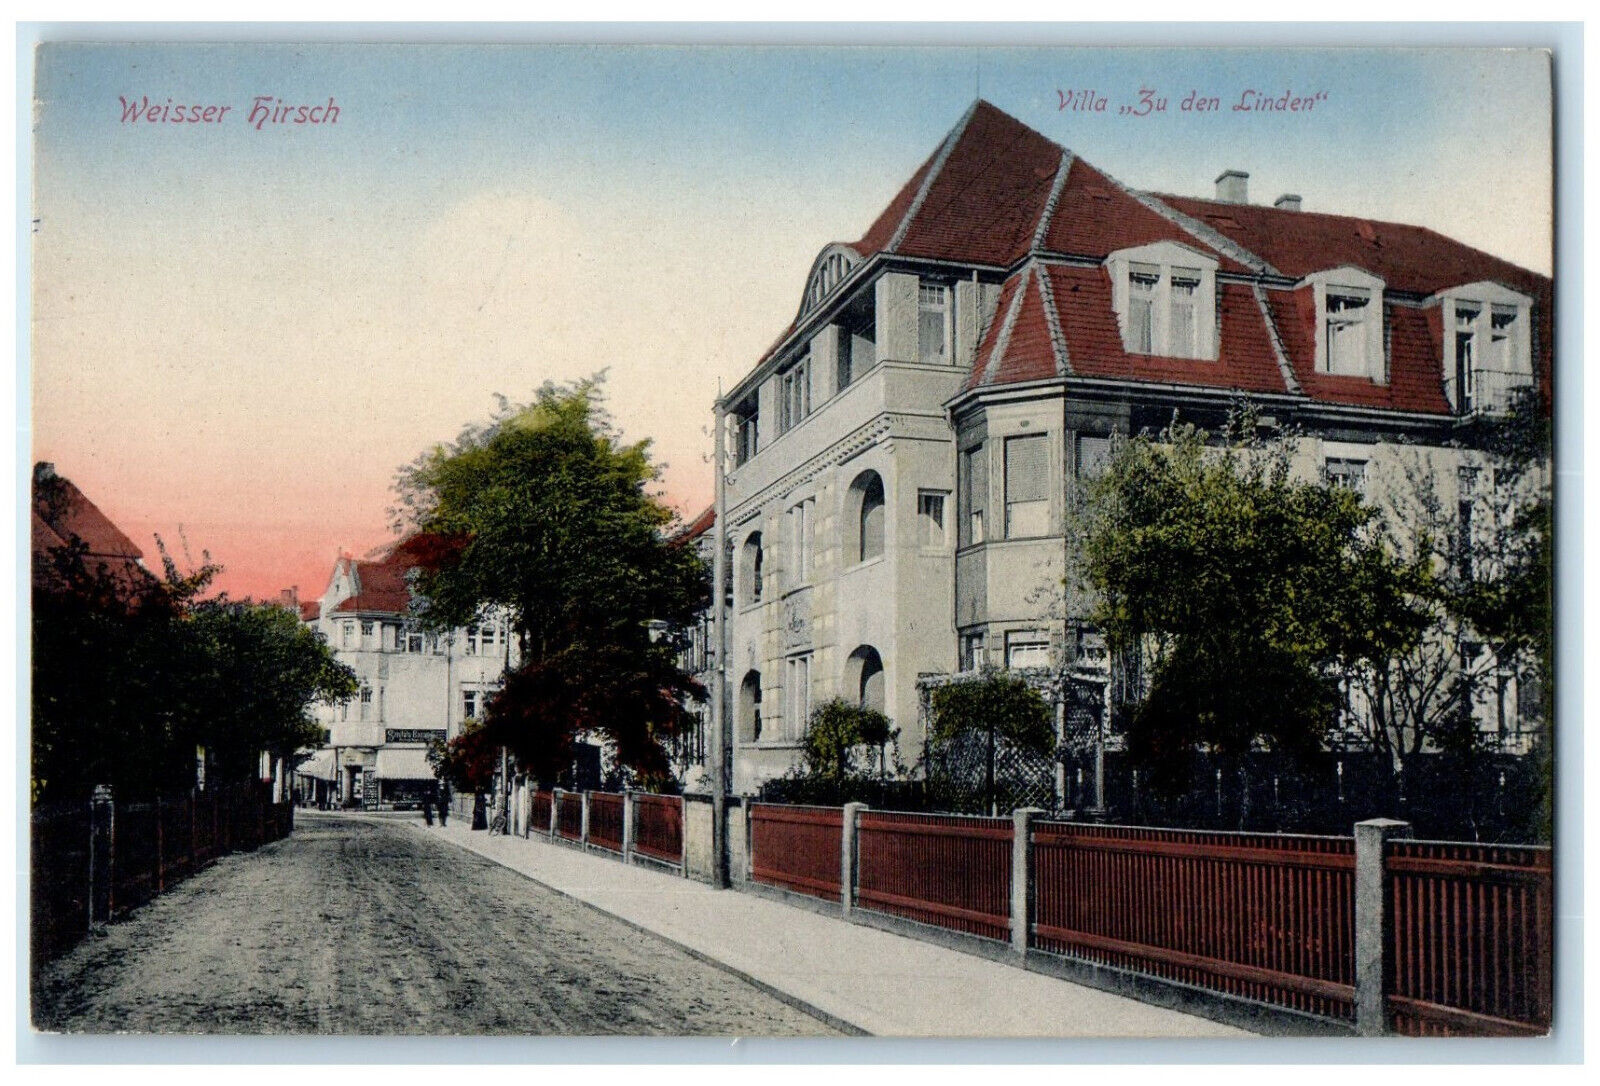 c1910 Villa 3u Den Linden Weisser Hirsch Dresden Germany Antique Postcard